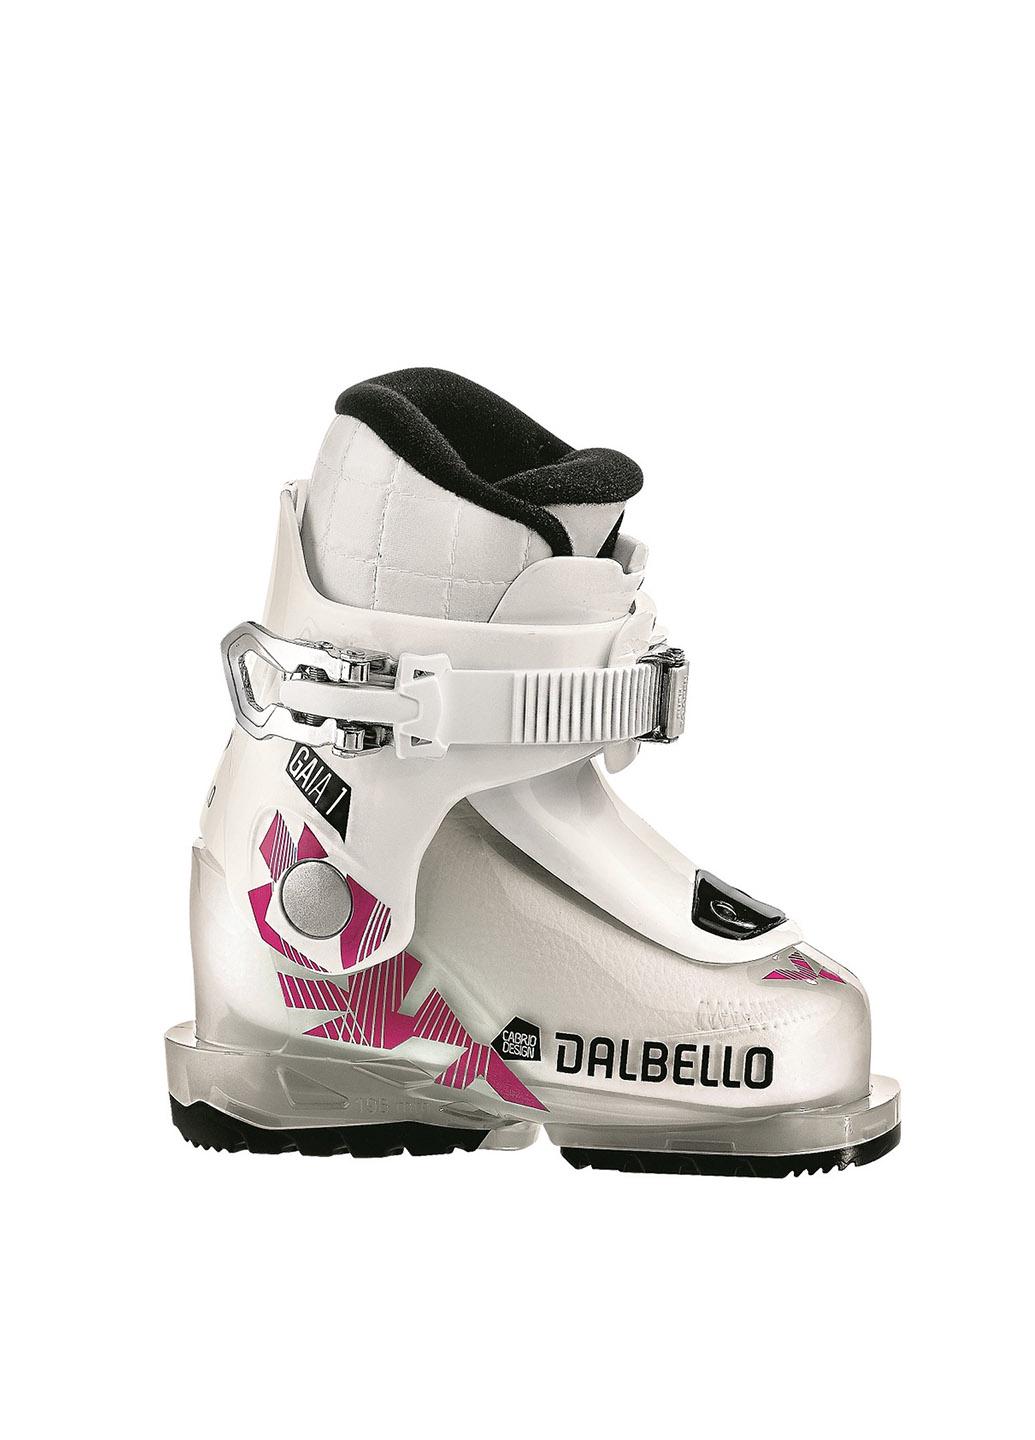 Горнолыжные ботинки детские Dalbello Gaia 1.0 Junior р. 26 Бело-розовый (DLB-G1-р. 26)